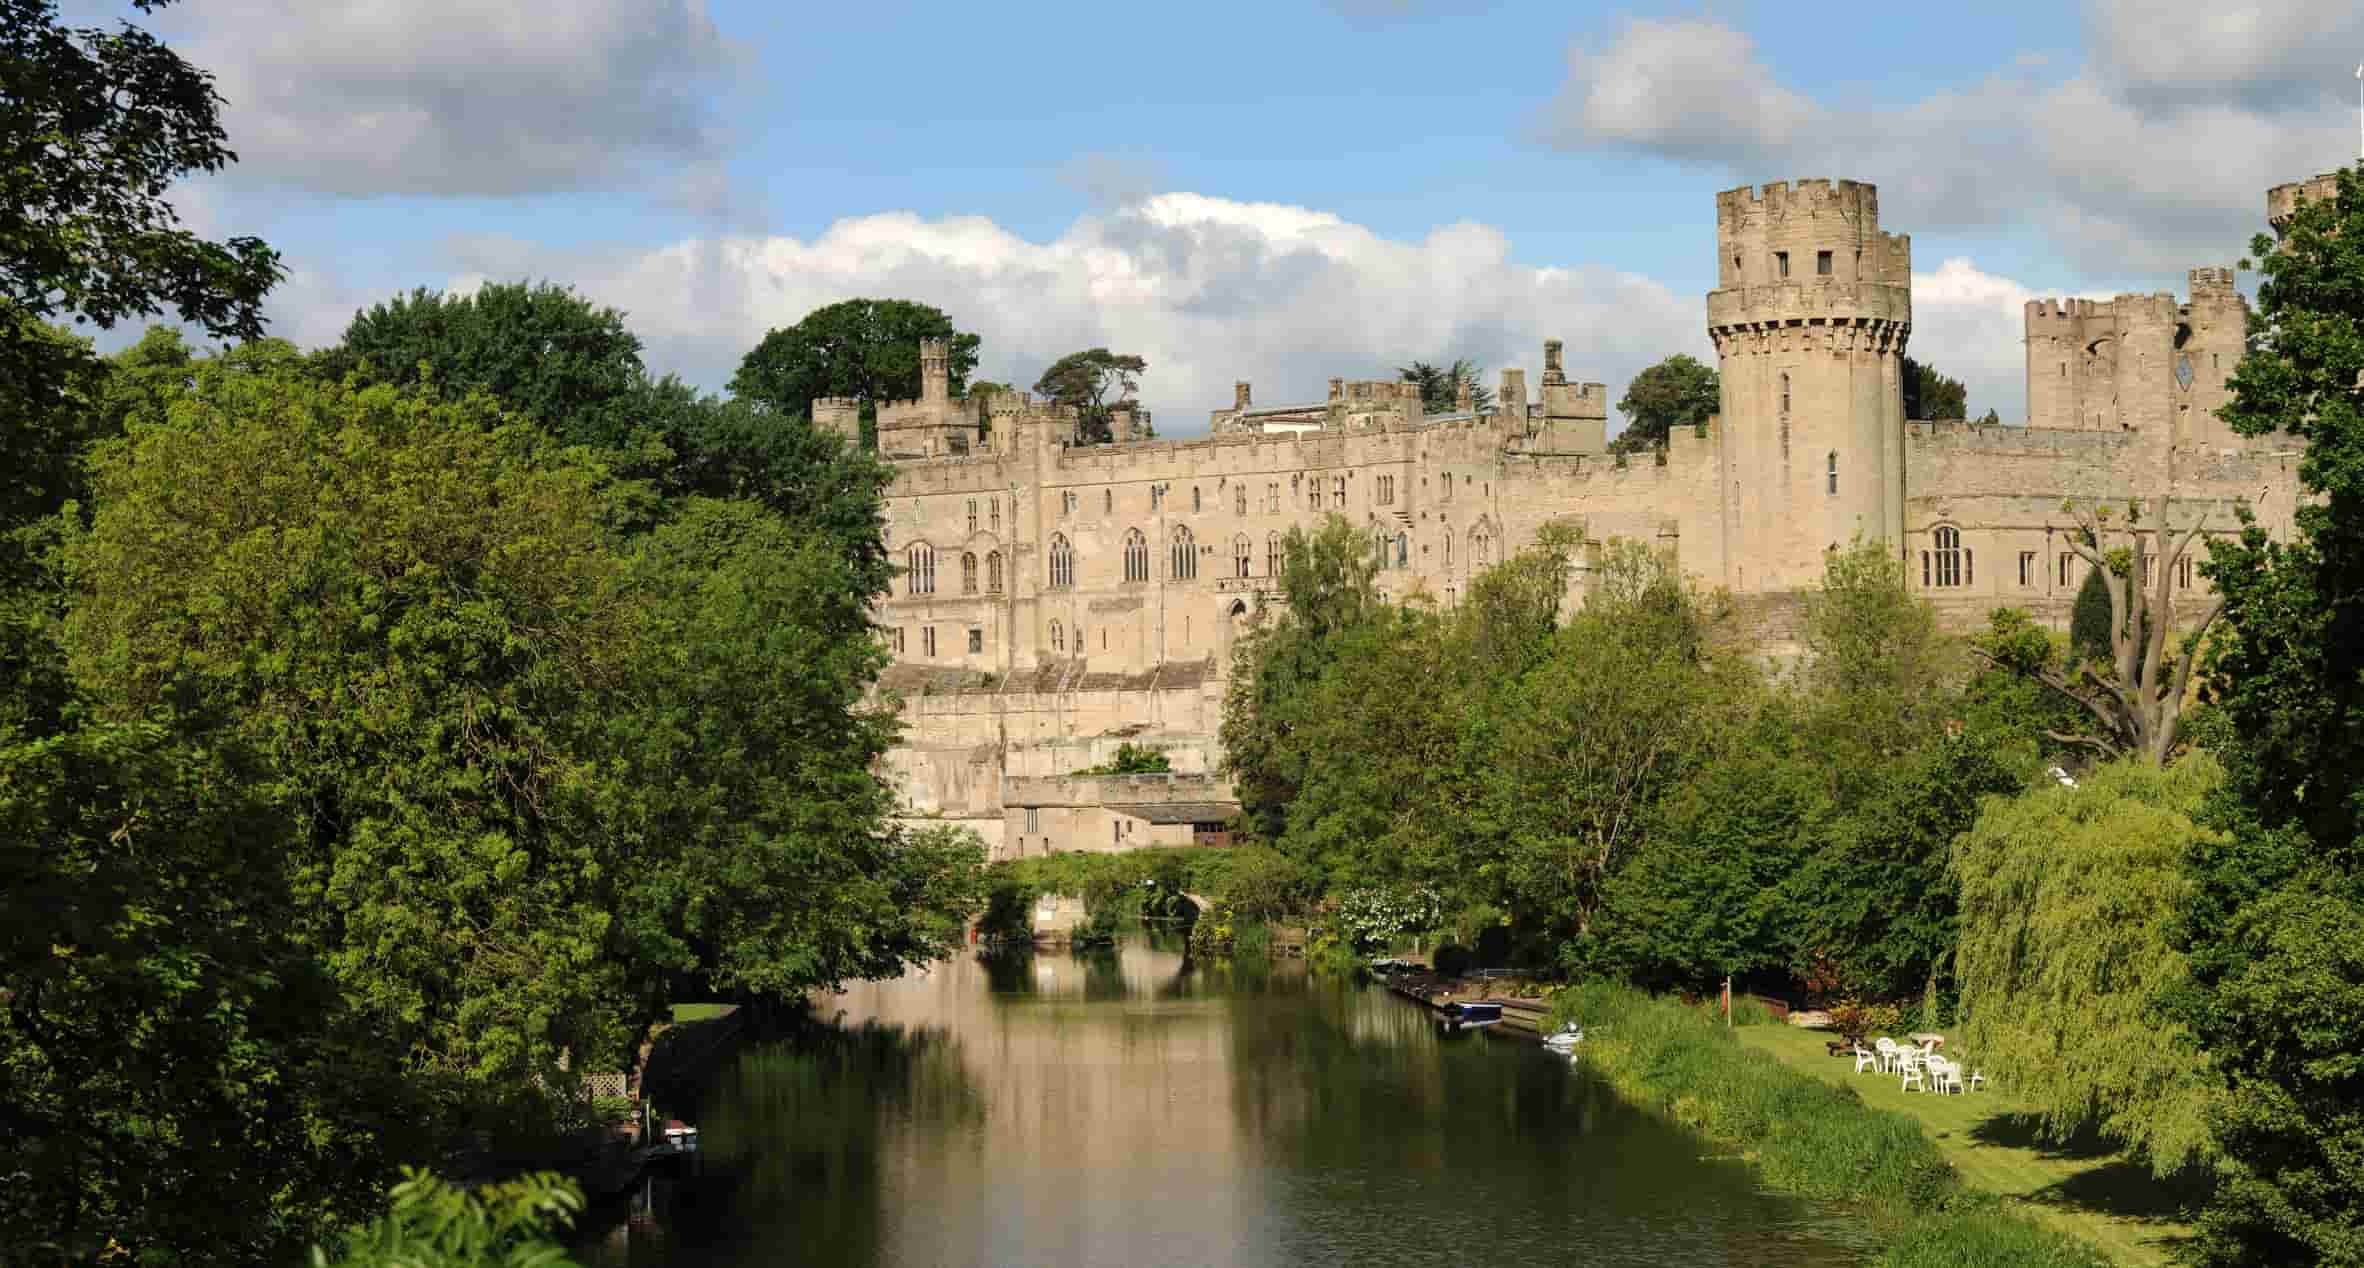 Best medieval castle: Warwick Castle